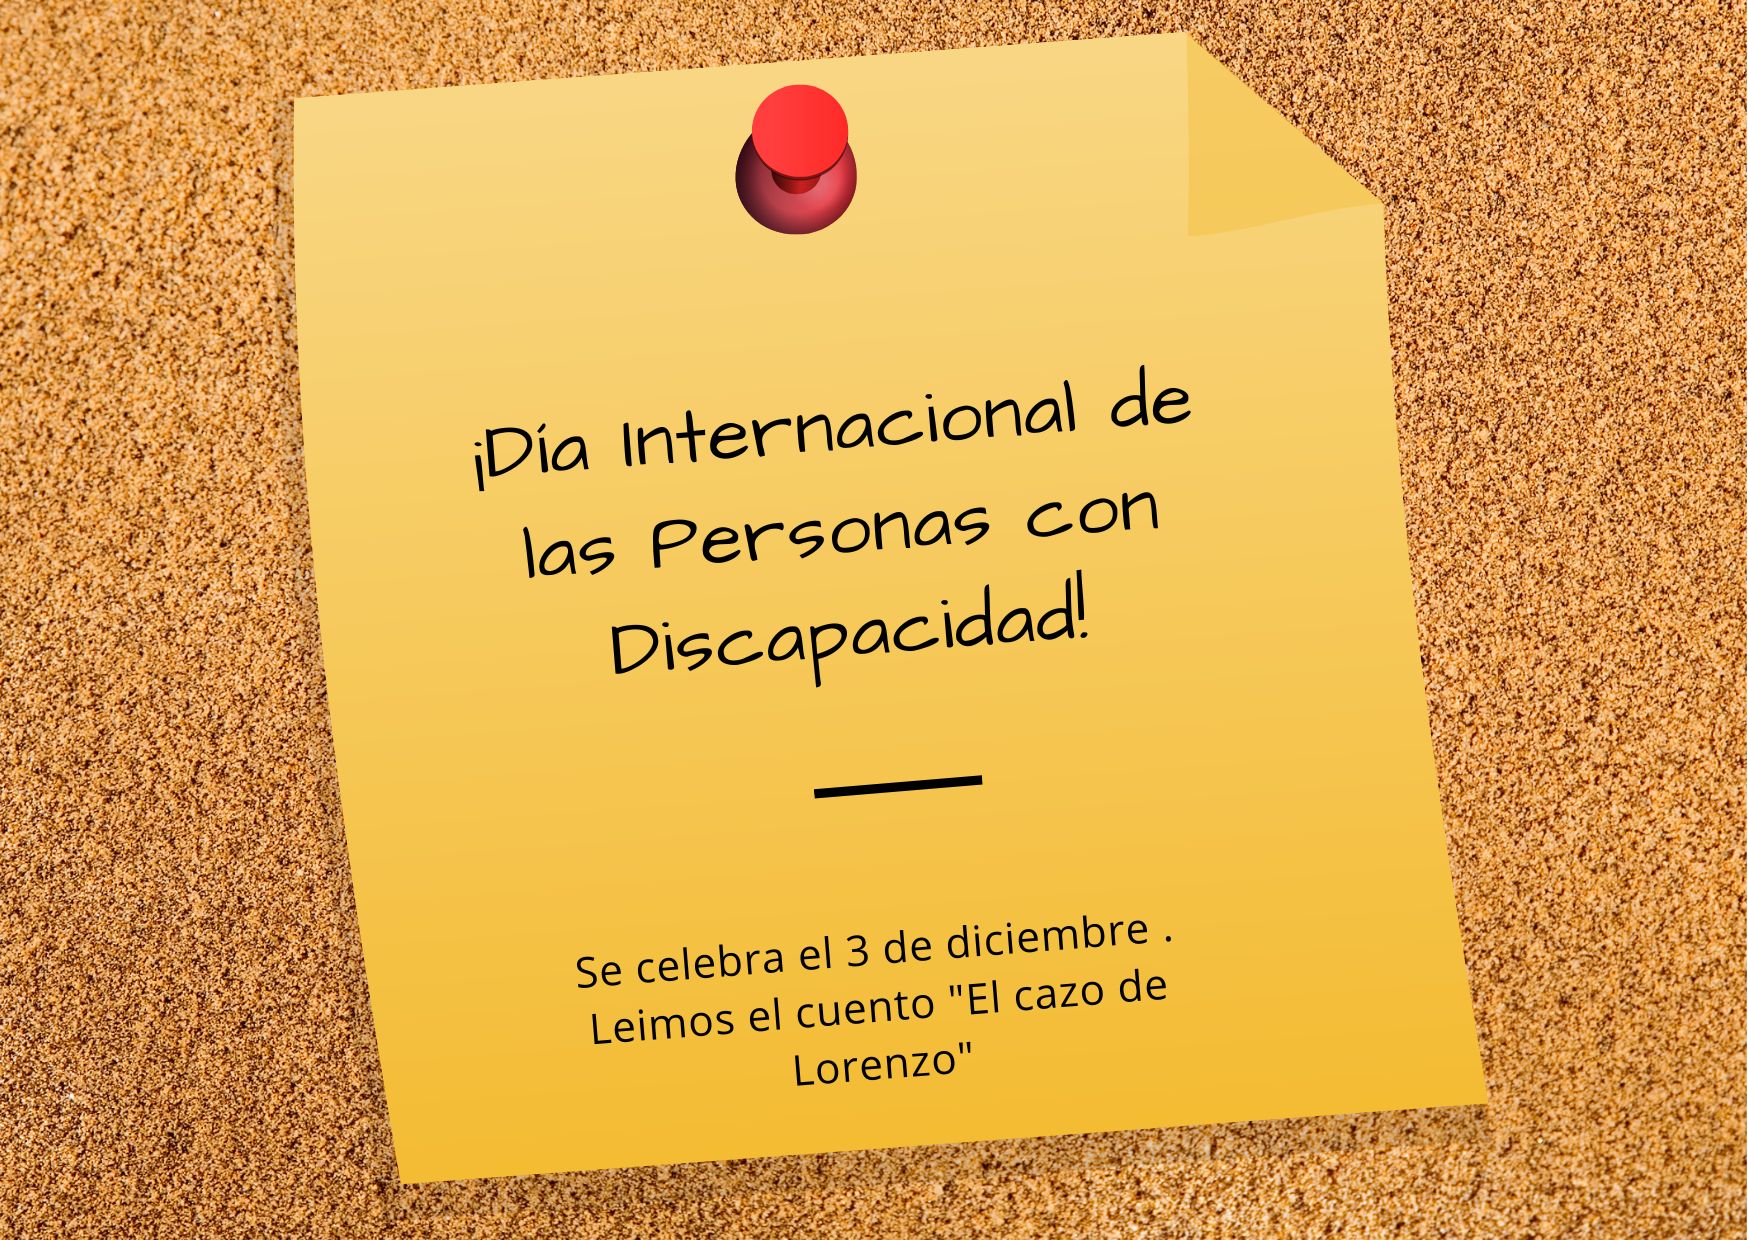 La imagen muestra un cartel pequeño de color amarillo que recuerda el Dia Internacional de las Personas con Discapacidad , el 3 de diciembre y leyeron el cuento “El cazo de Lorenzo”